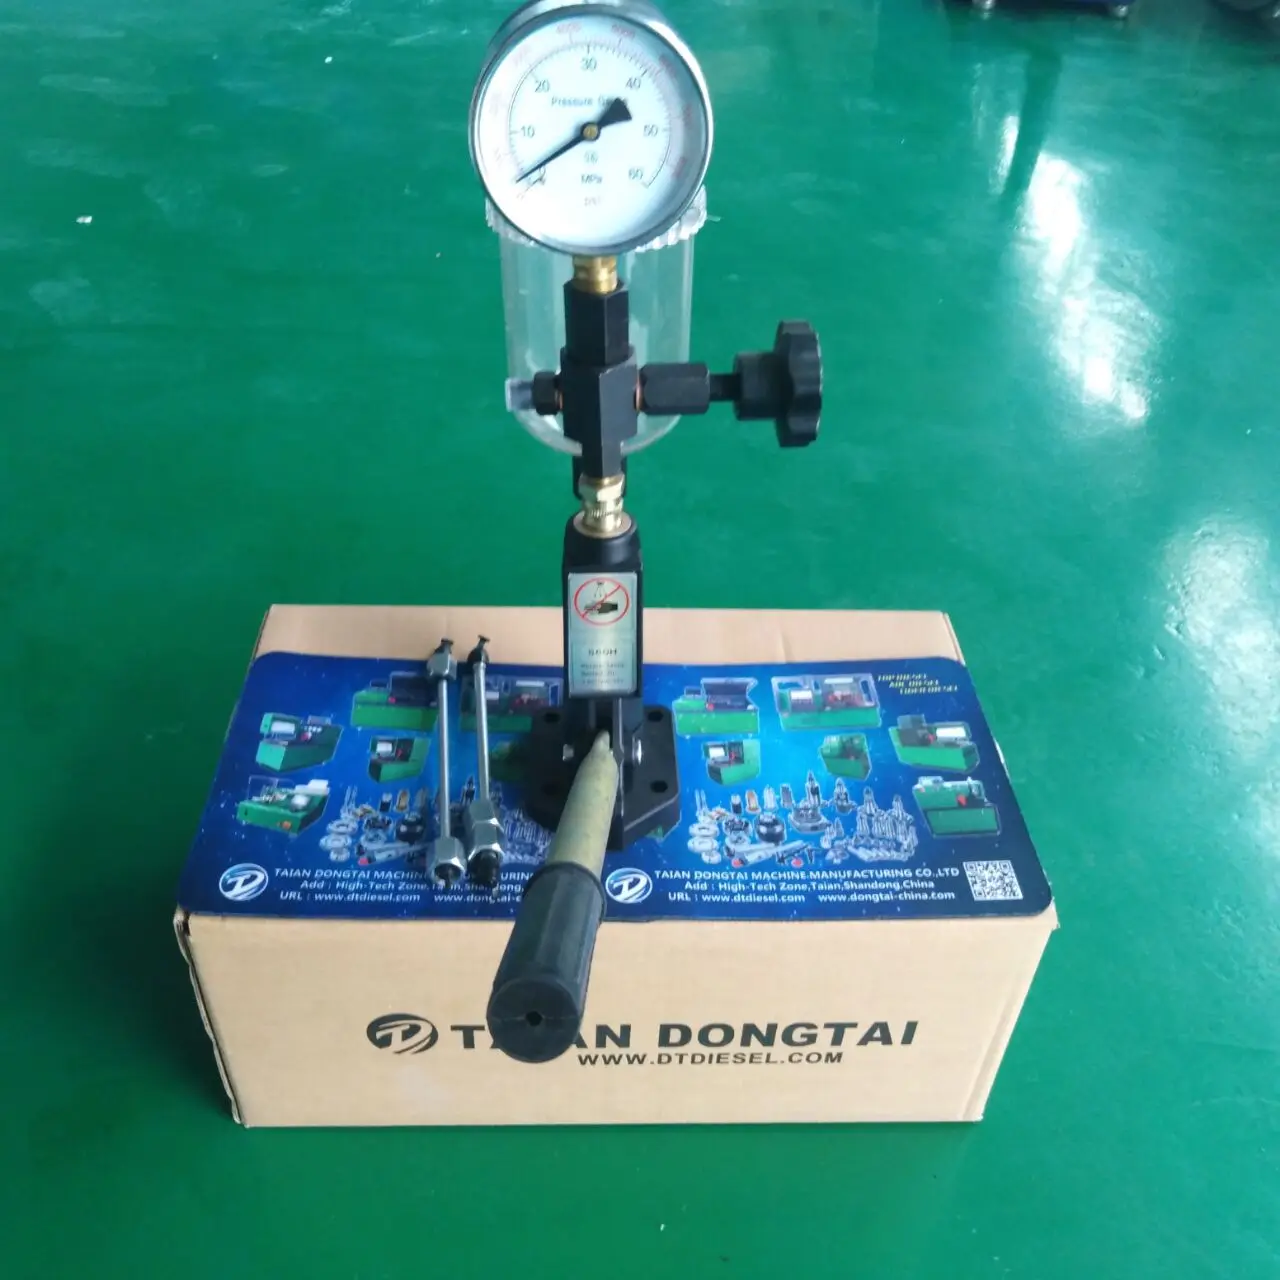 Manomètre pour testeur de buse d'injecteur diesel S60h, 0-60MPa